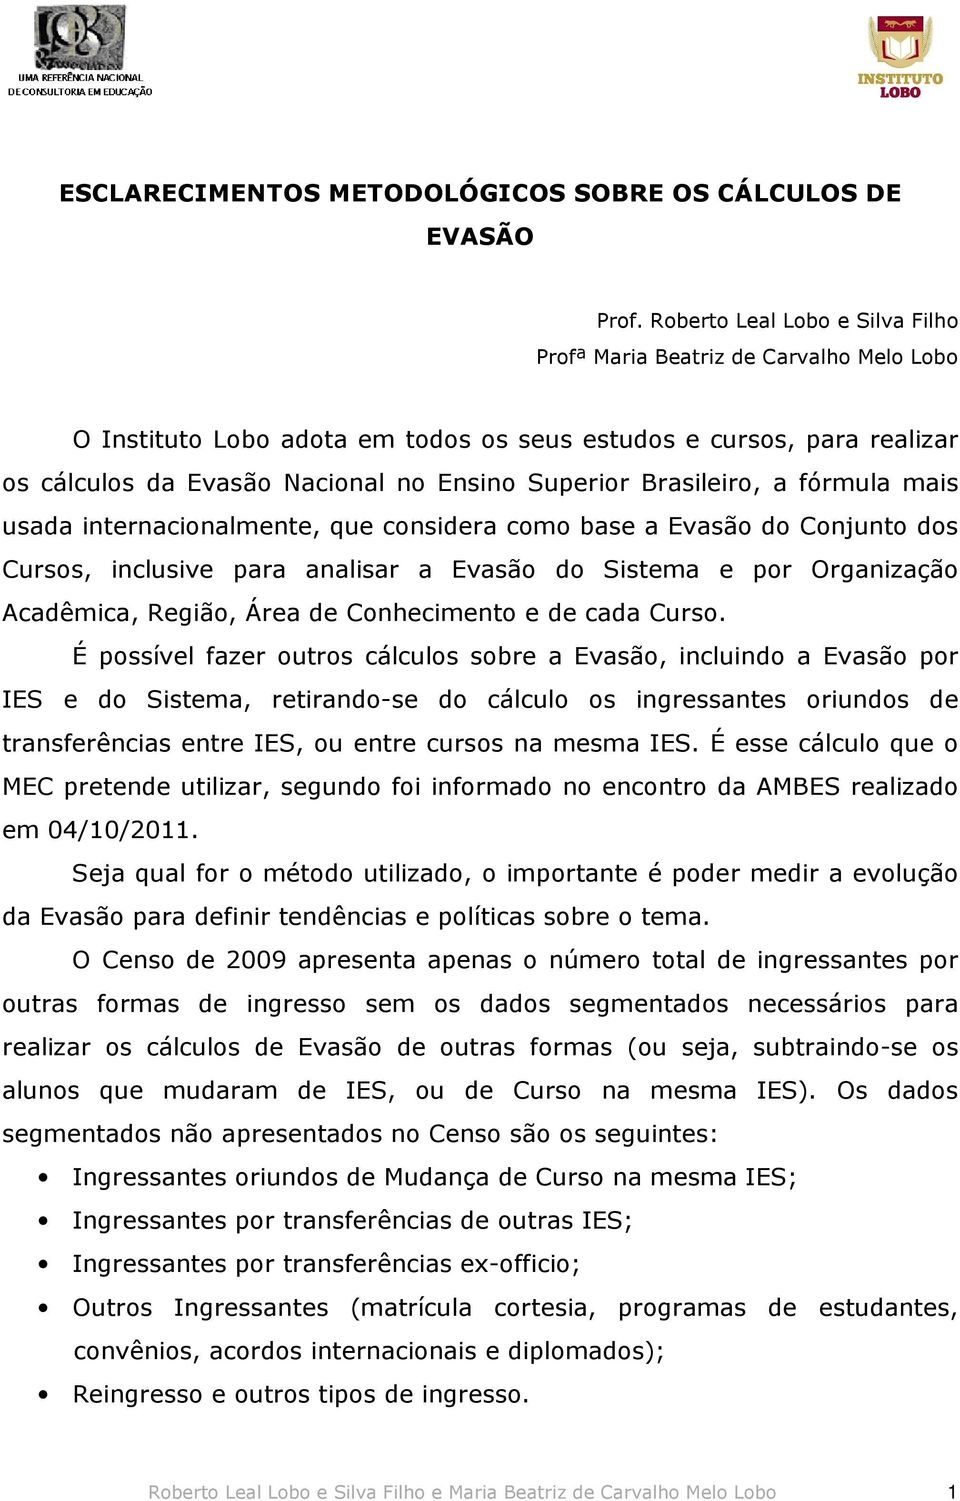 Brasileiro, a fórmula mais usada internacionalmente, que considera como base a Evasão do Conjunto dos Cursos, inclusive para analisar a Evasão do Sistema e por Organização Acadêmica, Região, Área de